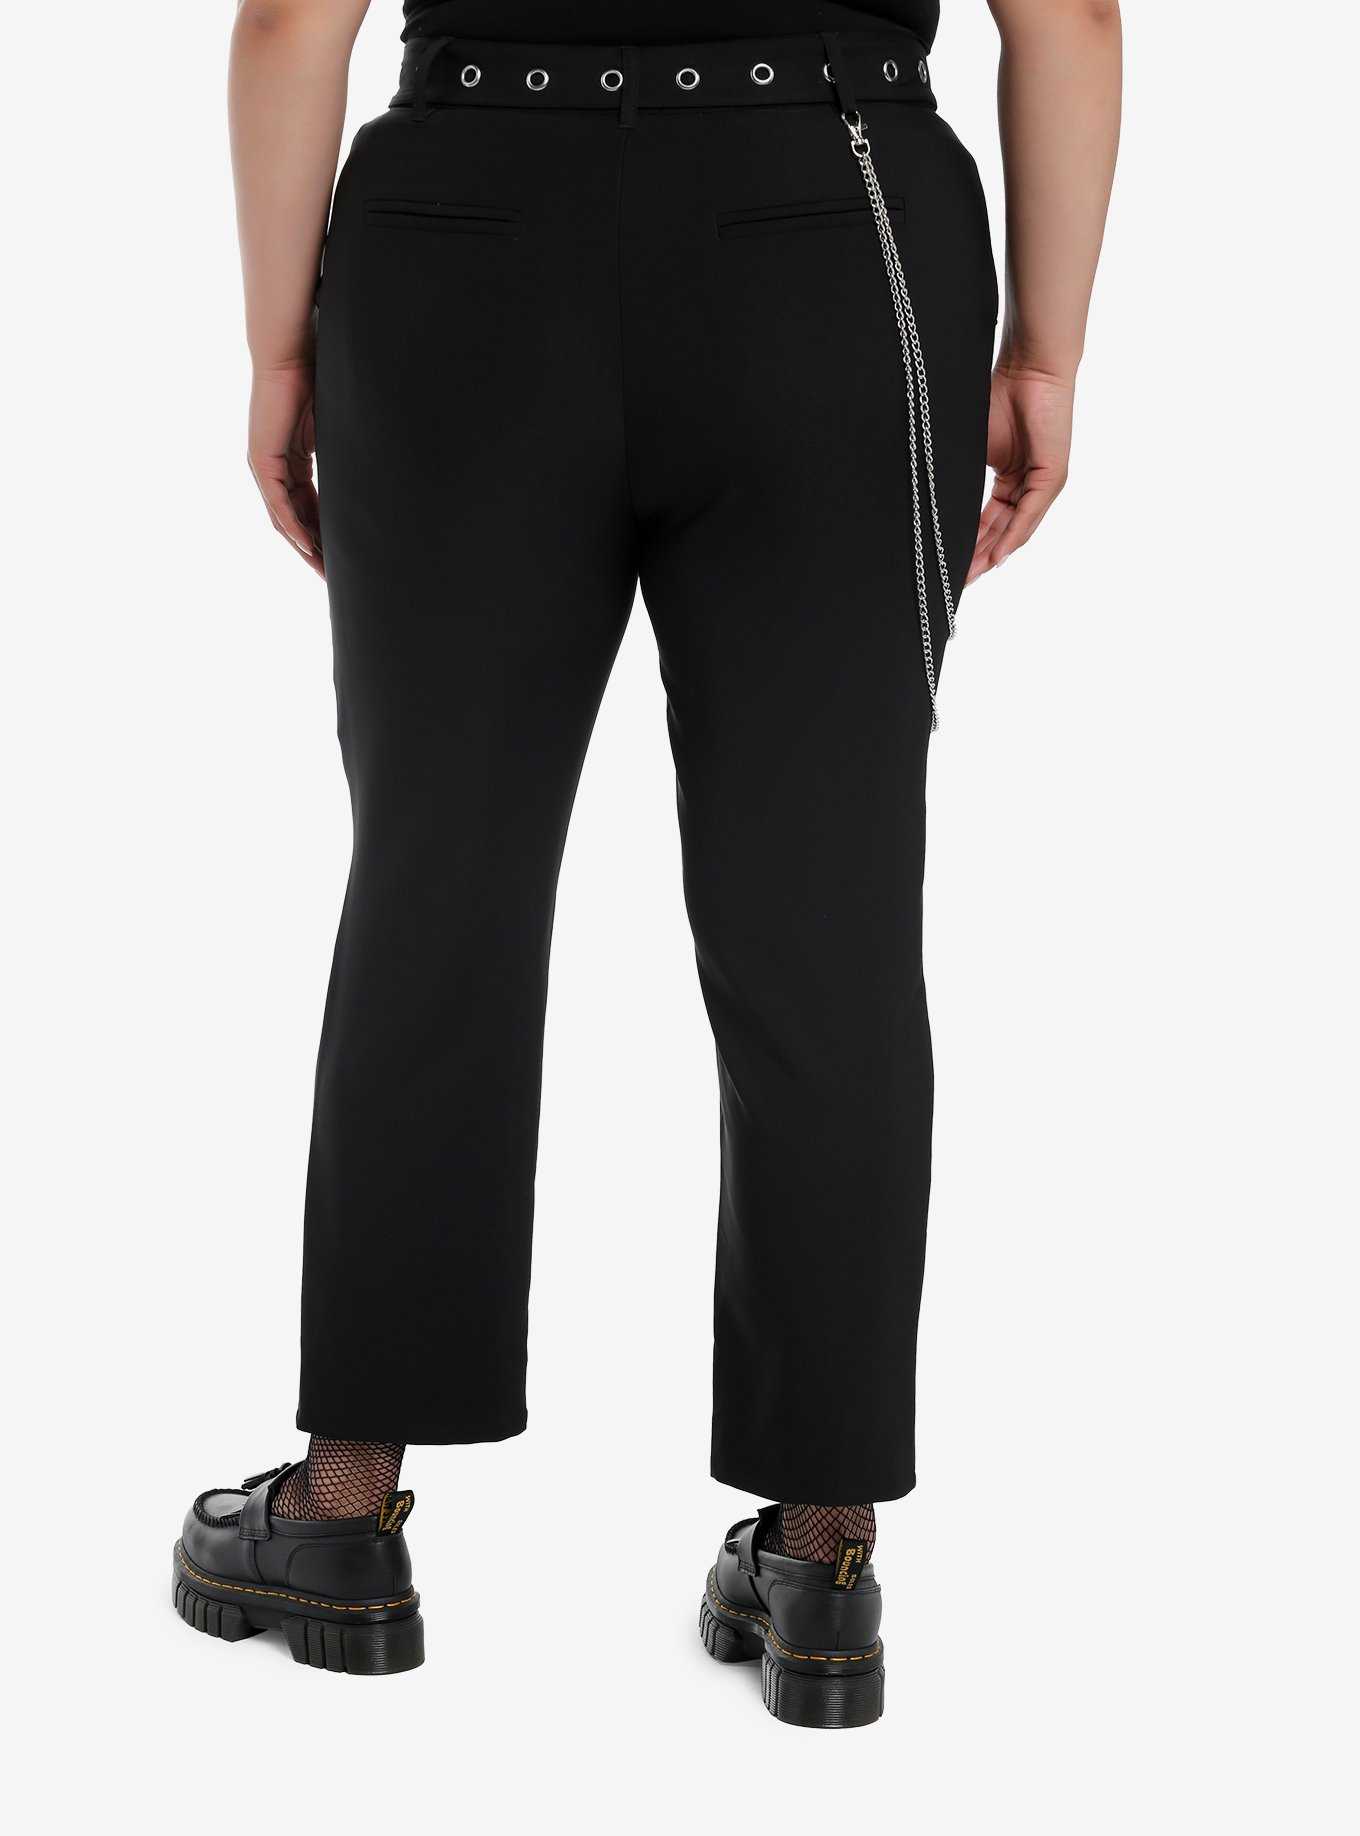 Black Side Chain Grommet Belt Slim Pants Plus Size, , hi-res